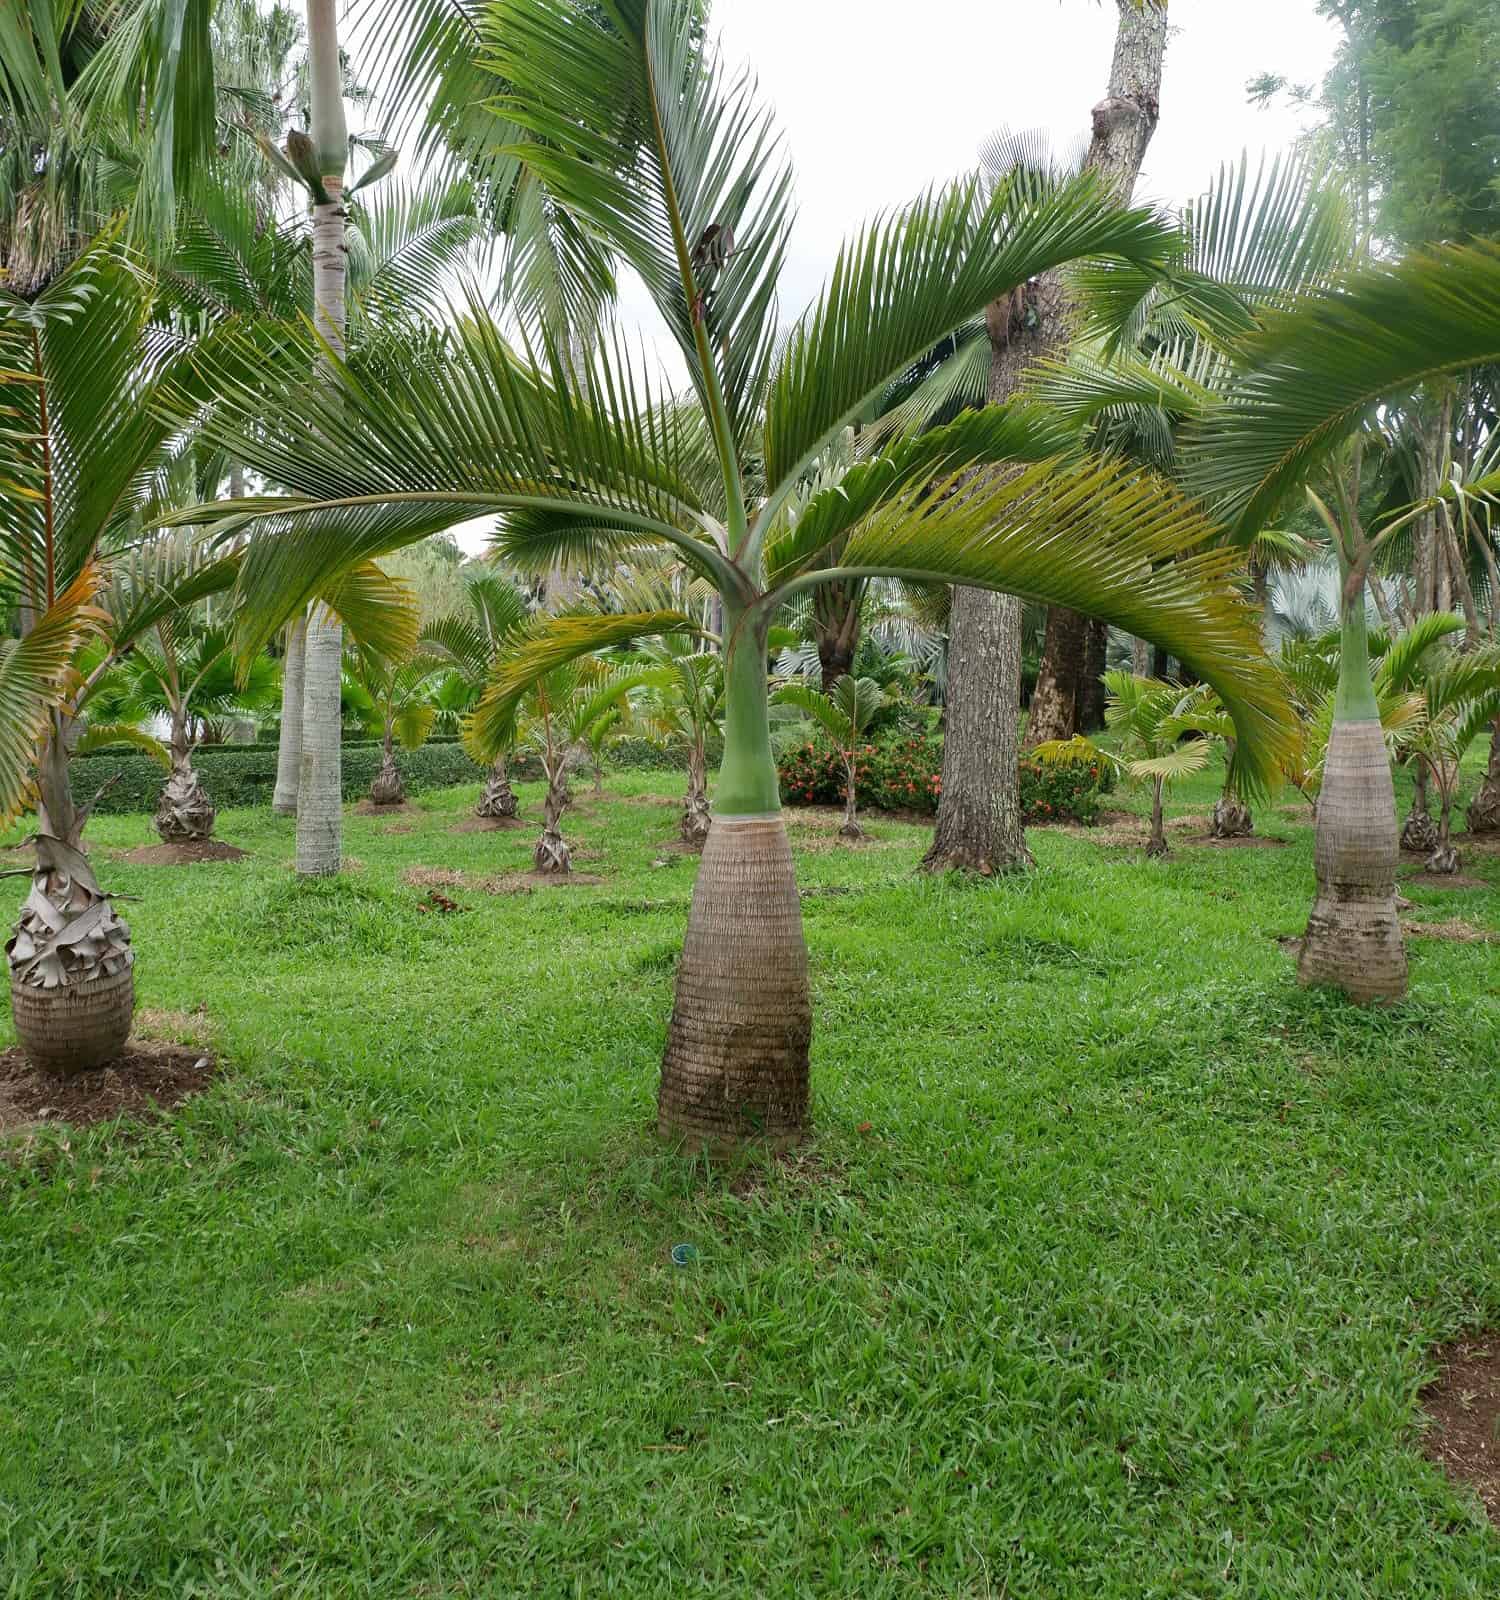 Palma bottiglia (nome scientifico Mascarena lagenicaulis) della famiglia delle Arecaceae, popolarmente coltivata come decorazione del giardino.